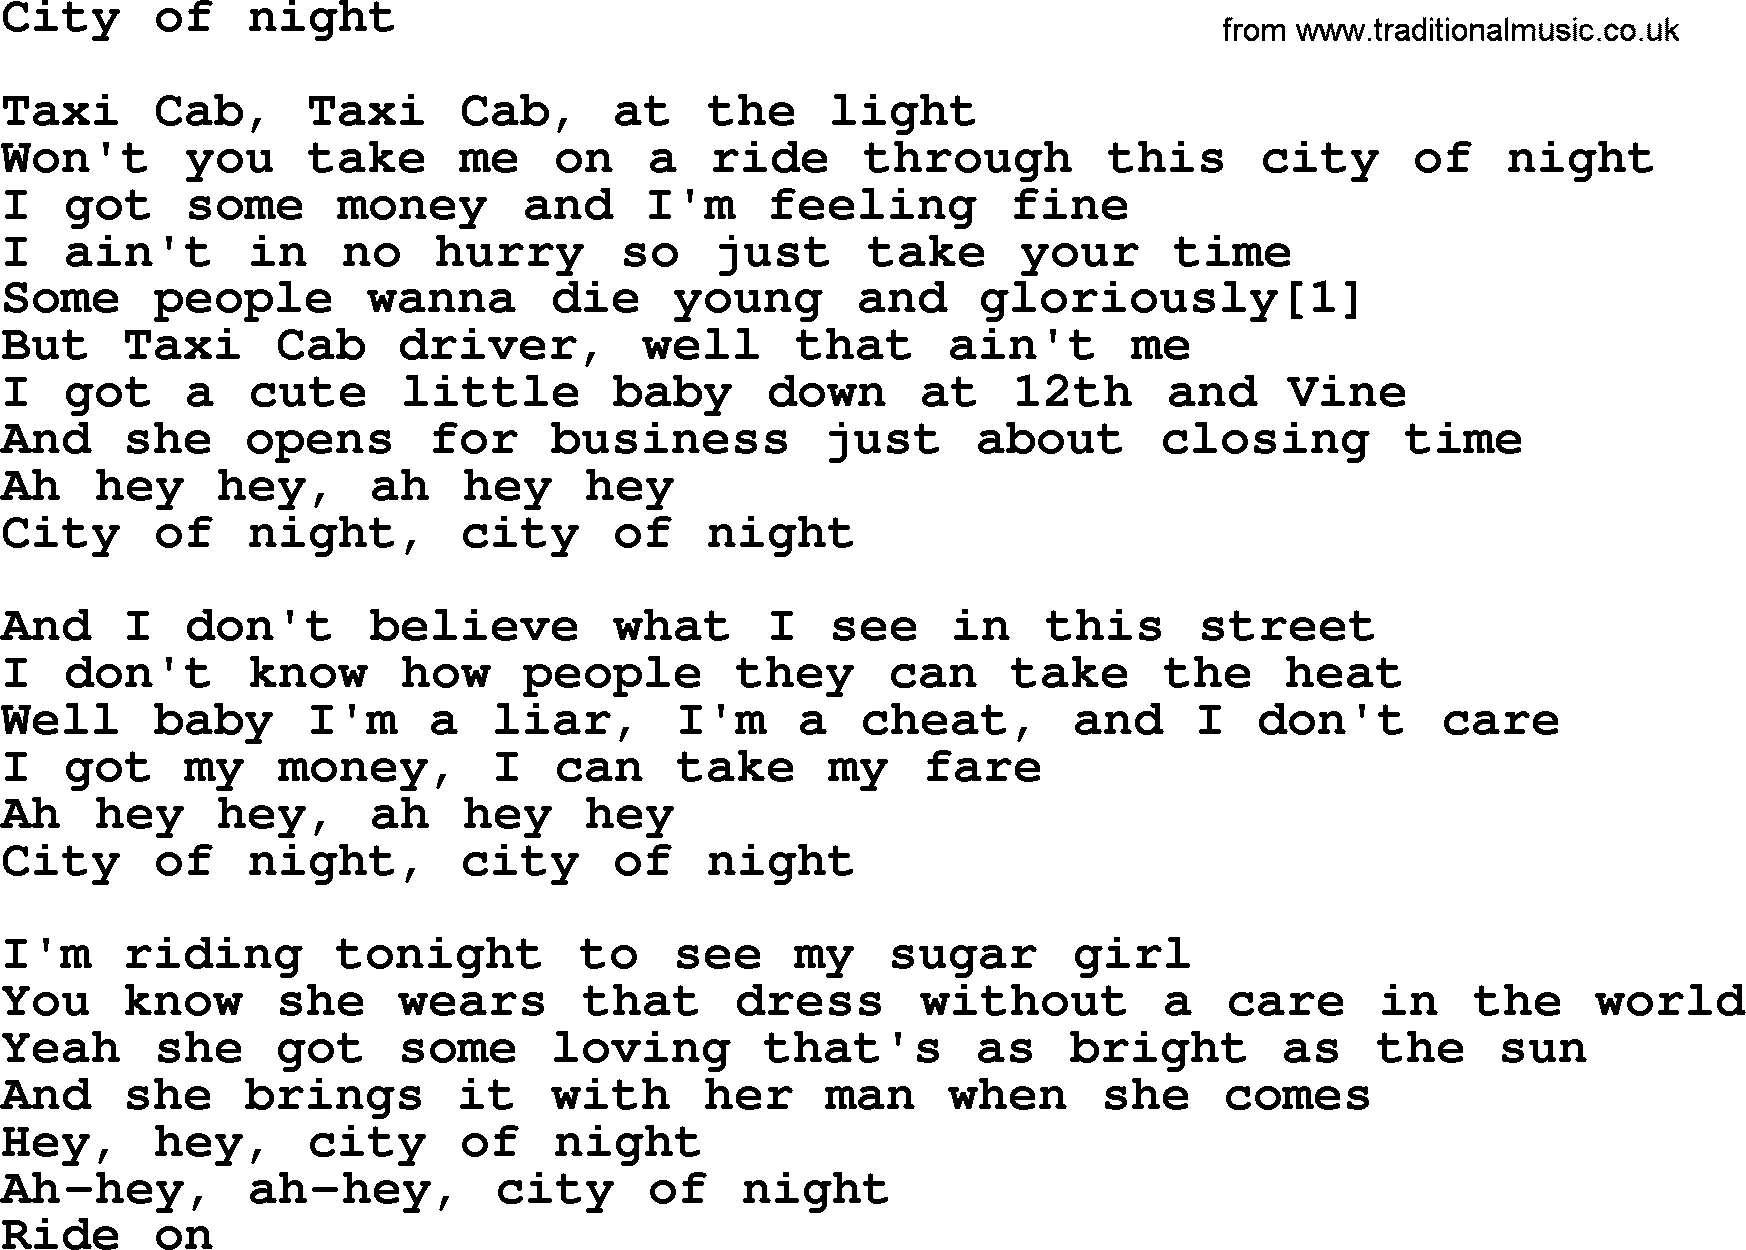 Bruce Springsteen song: City Of Night lyrics